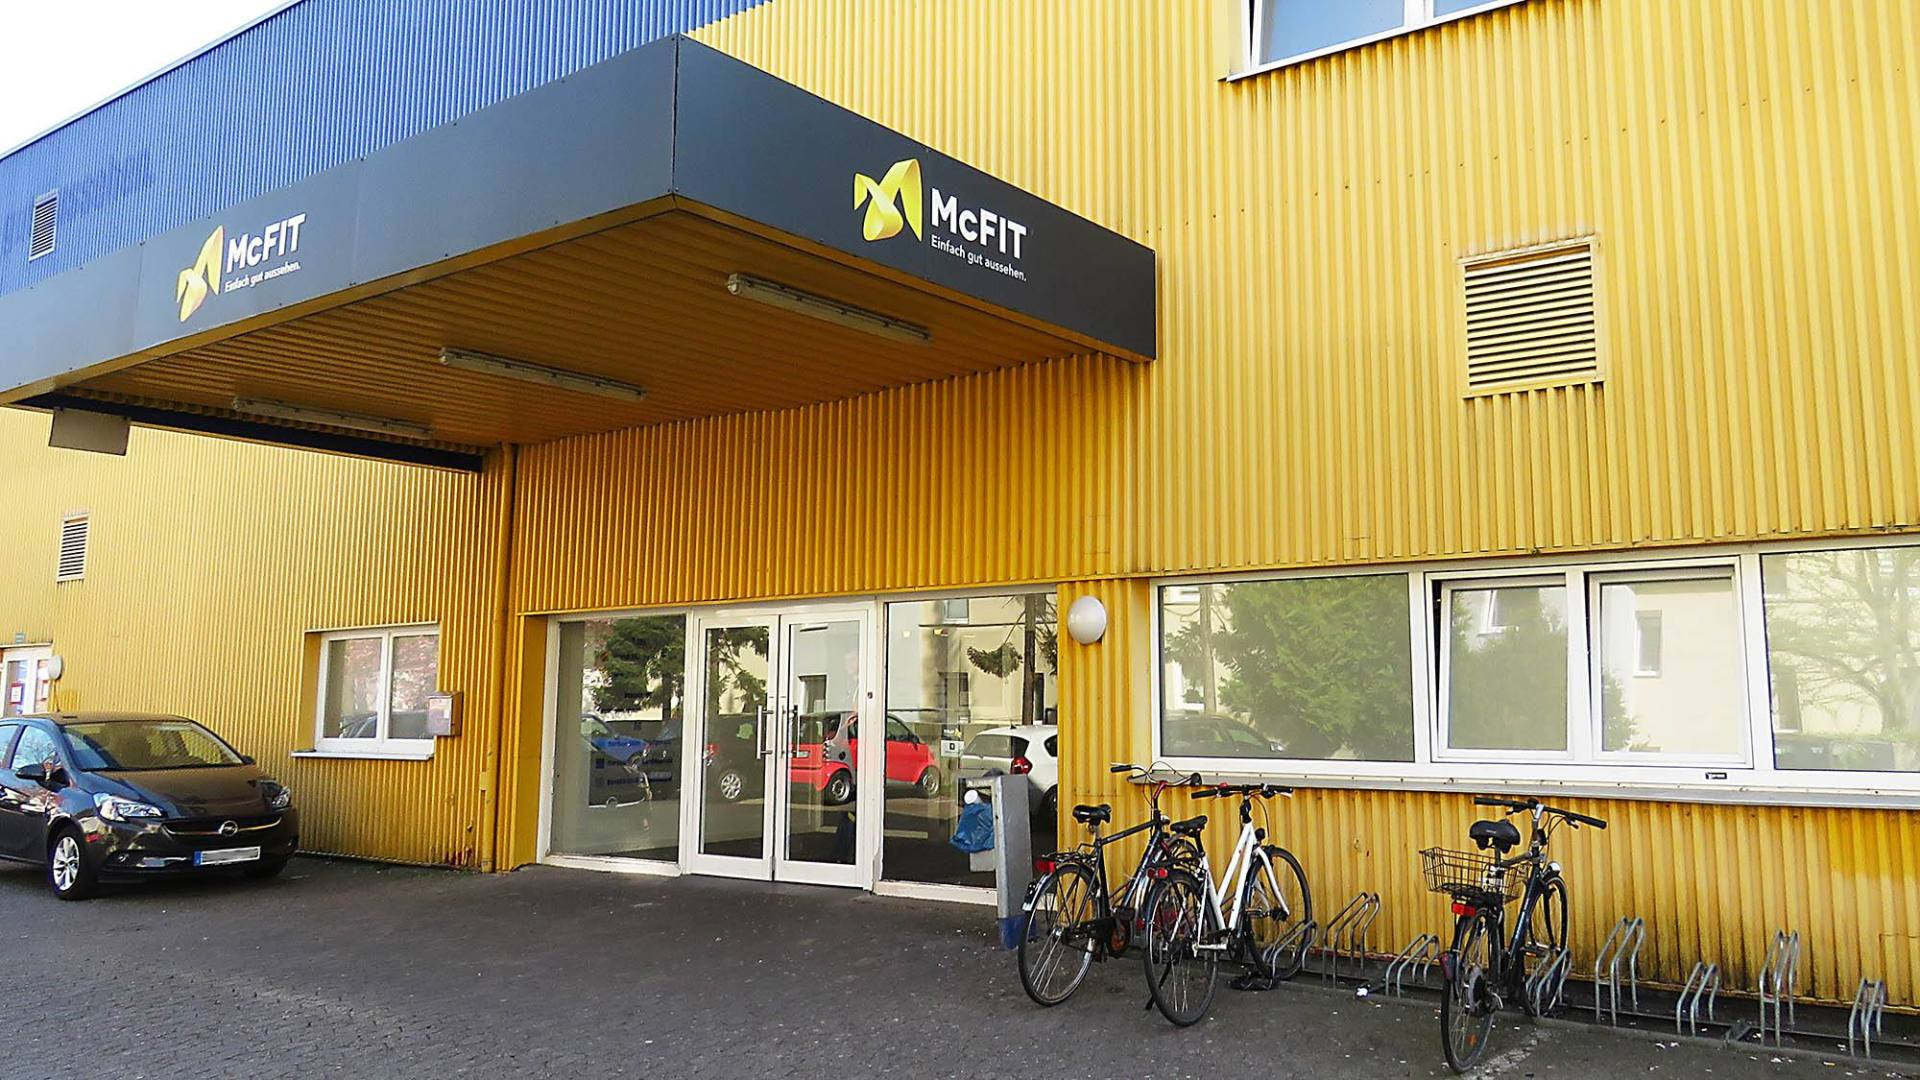 Mcfit Rauhes Haus
 McFIT Bremerhaven – Bremerhaven